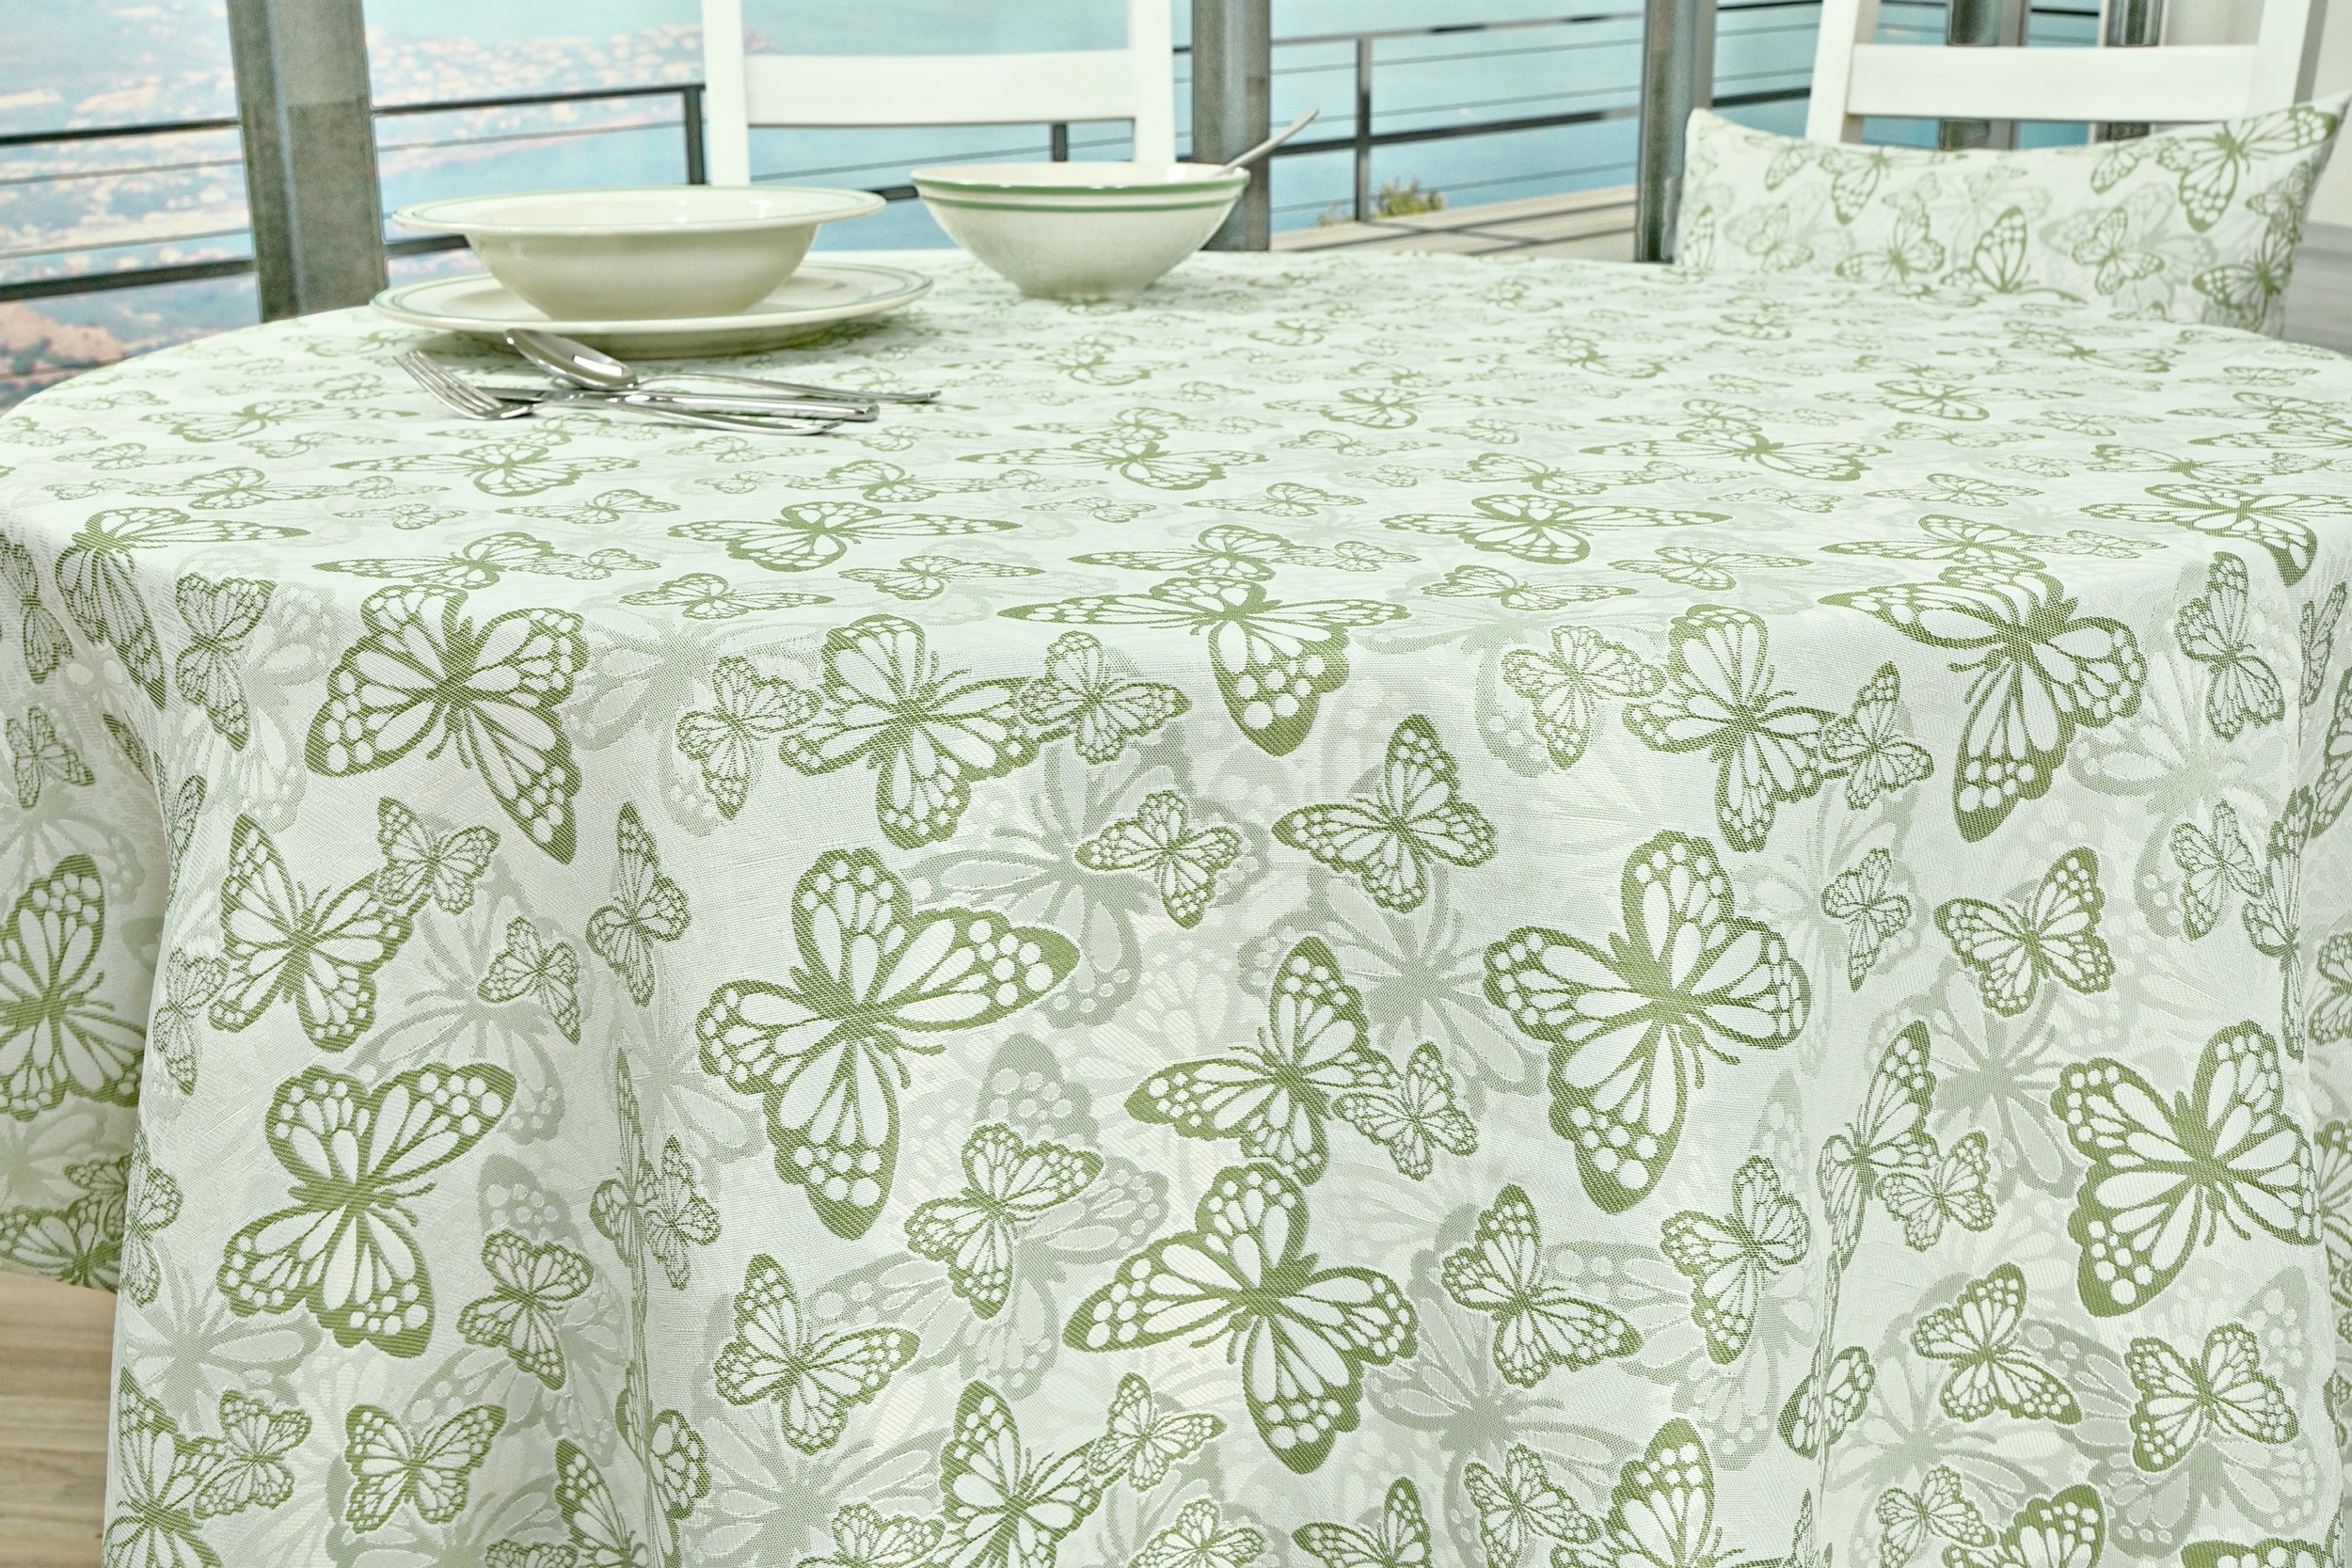 Fleckgeschützte Tischdecke Weiß Grün Muster Springtime ab 80 cm bis 160 cm RUND